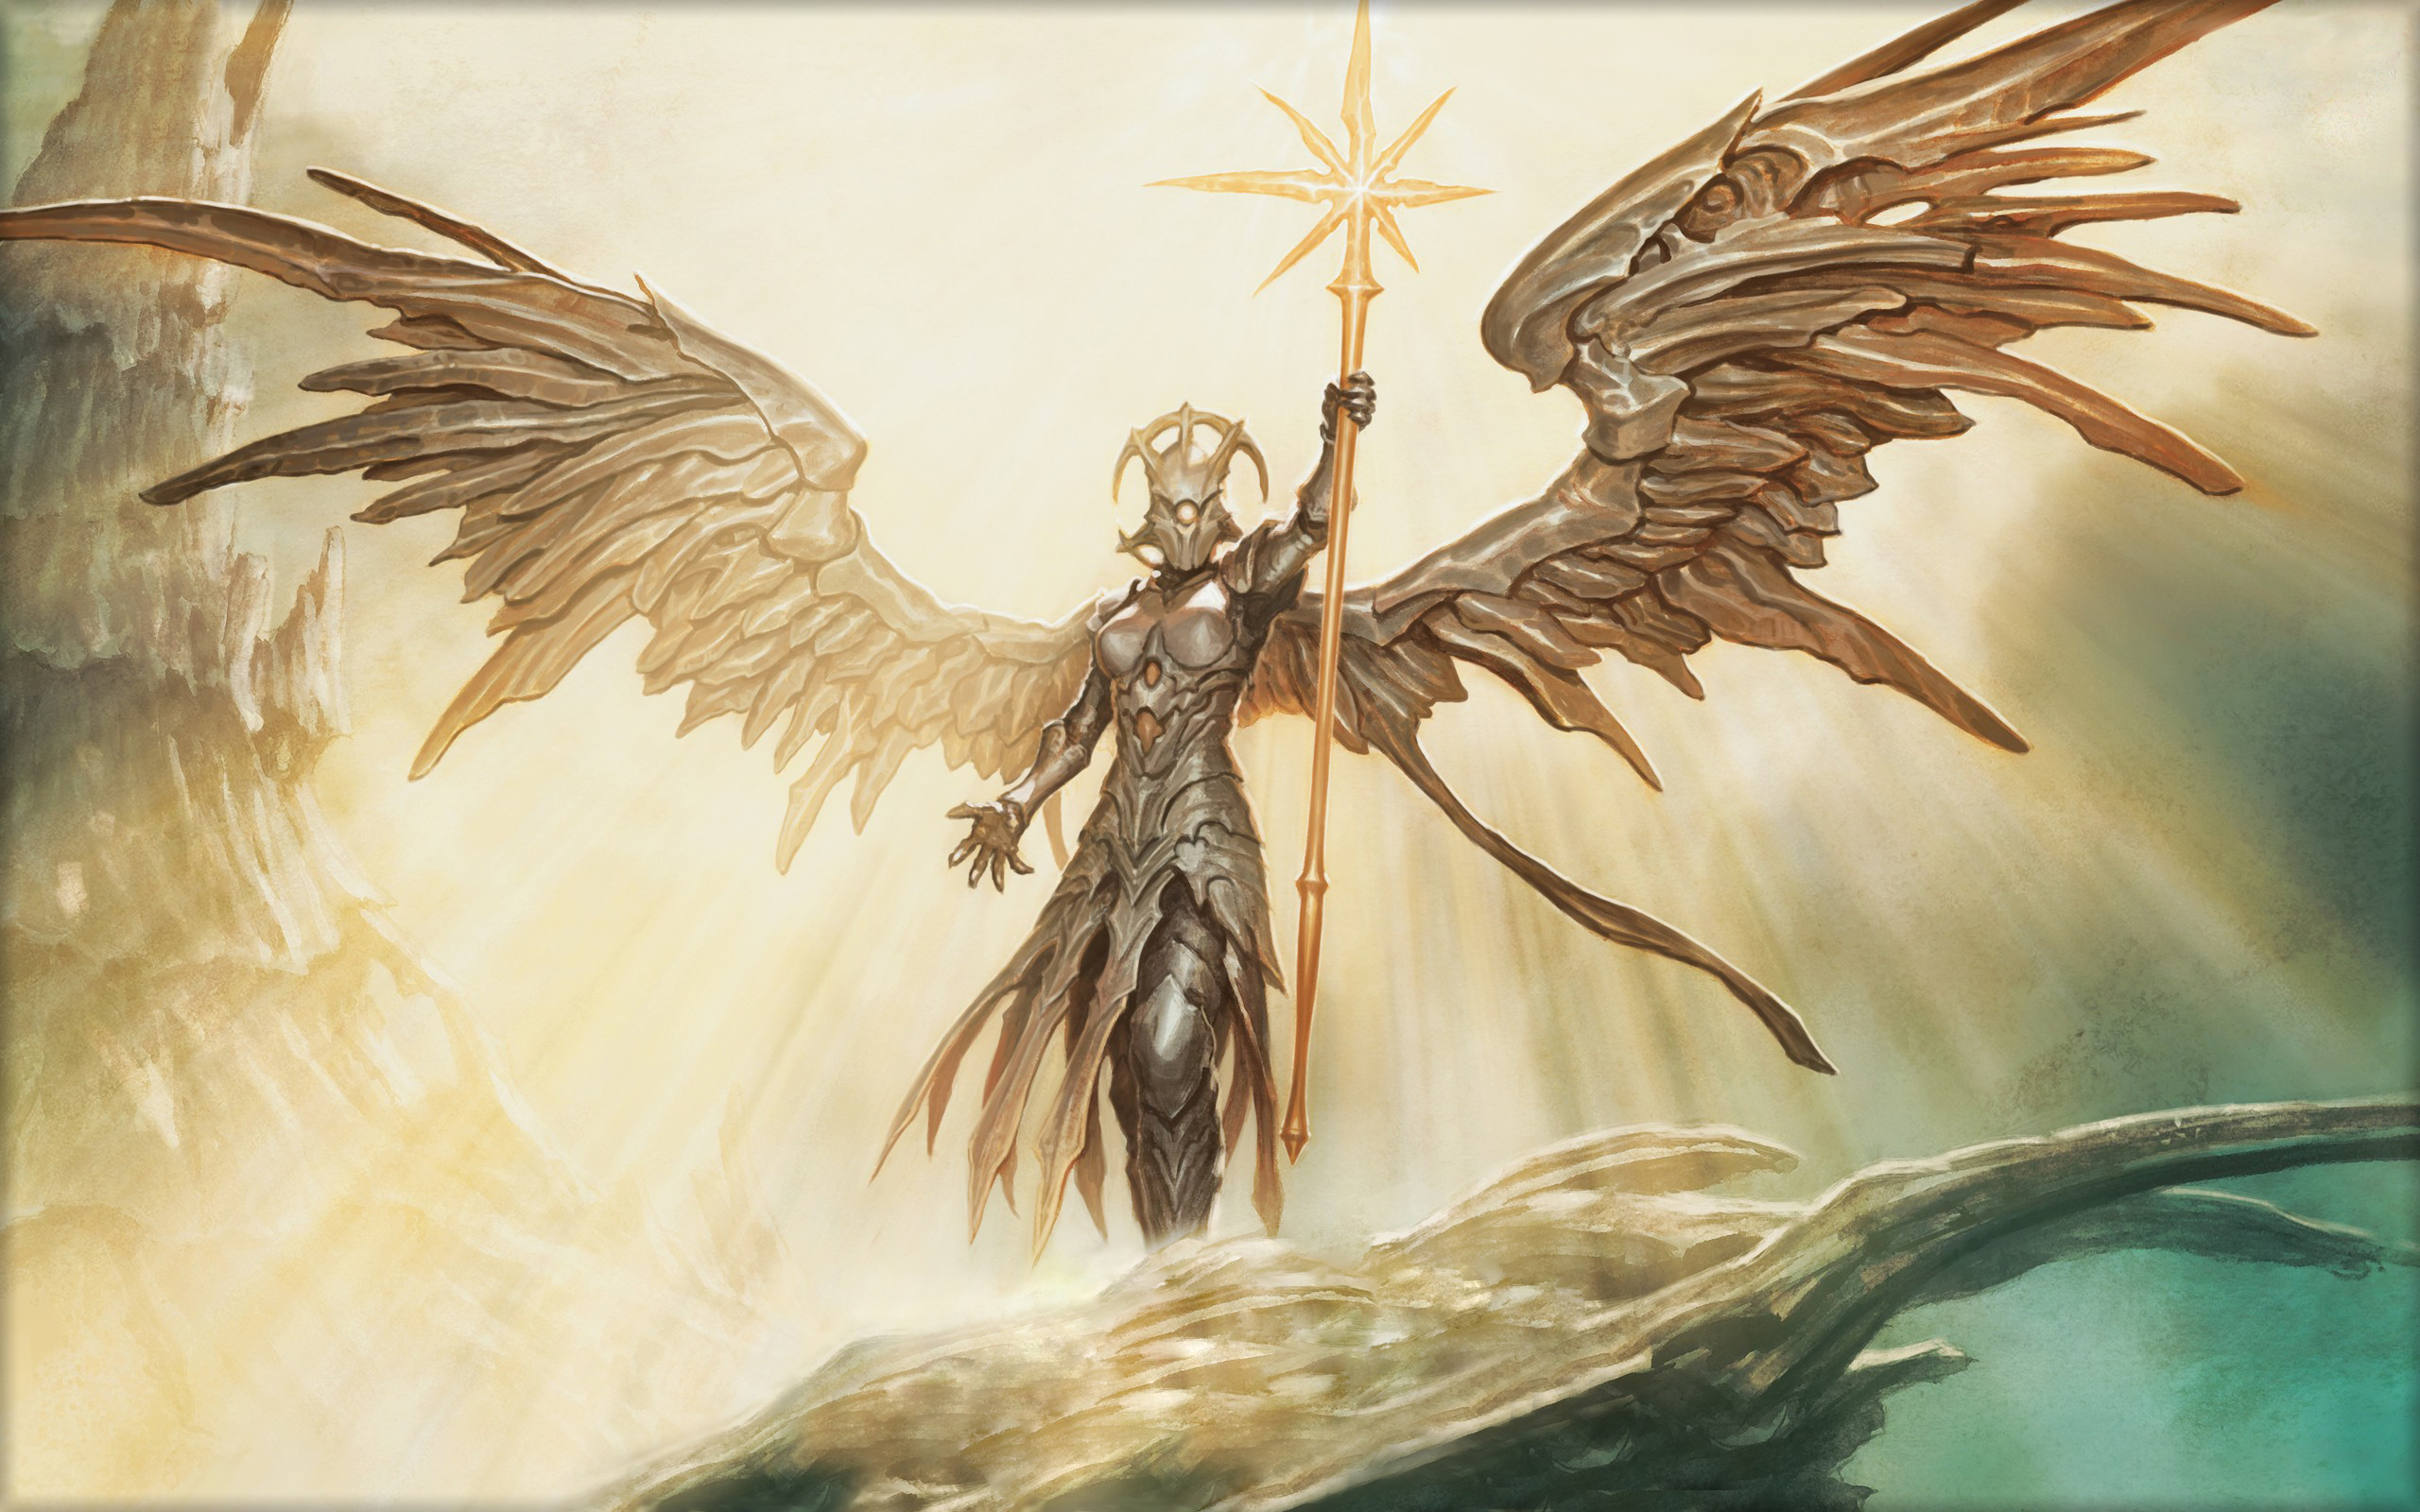 Golden Angel Scepter of sun light rays fantasy art picture Wallpaper Widescreen HD resolution 2560x1600, Wallpaper13.com